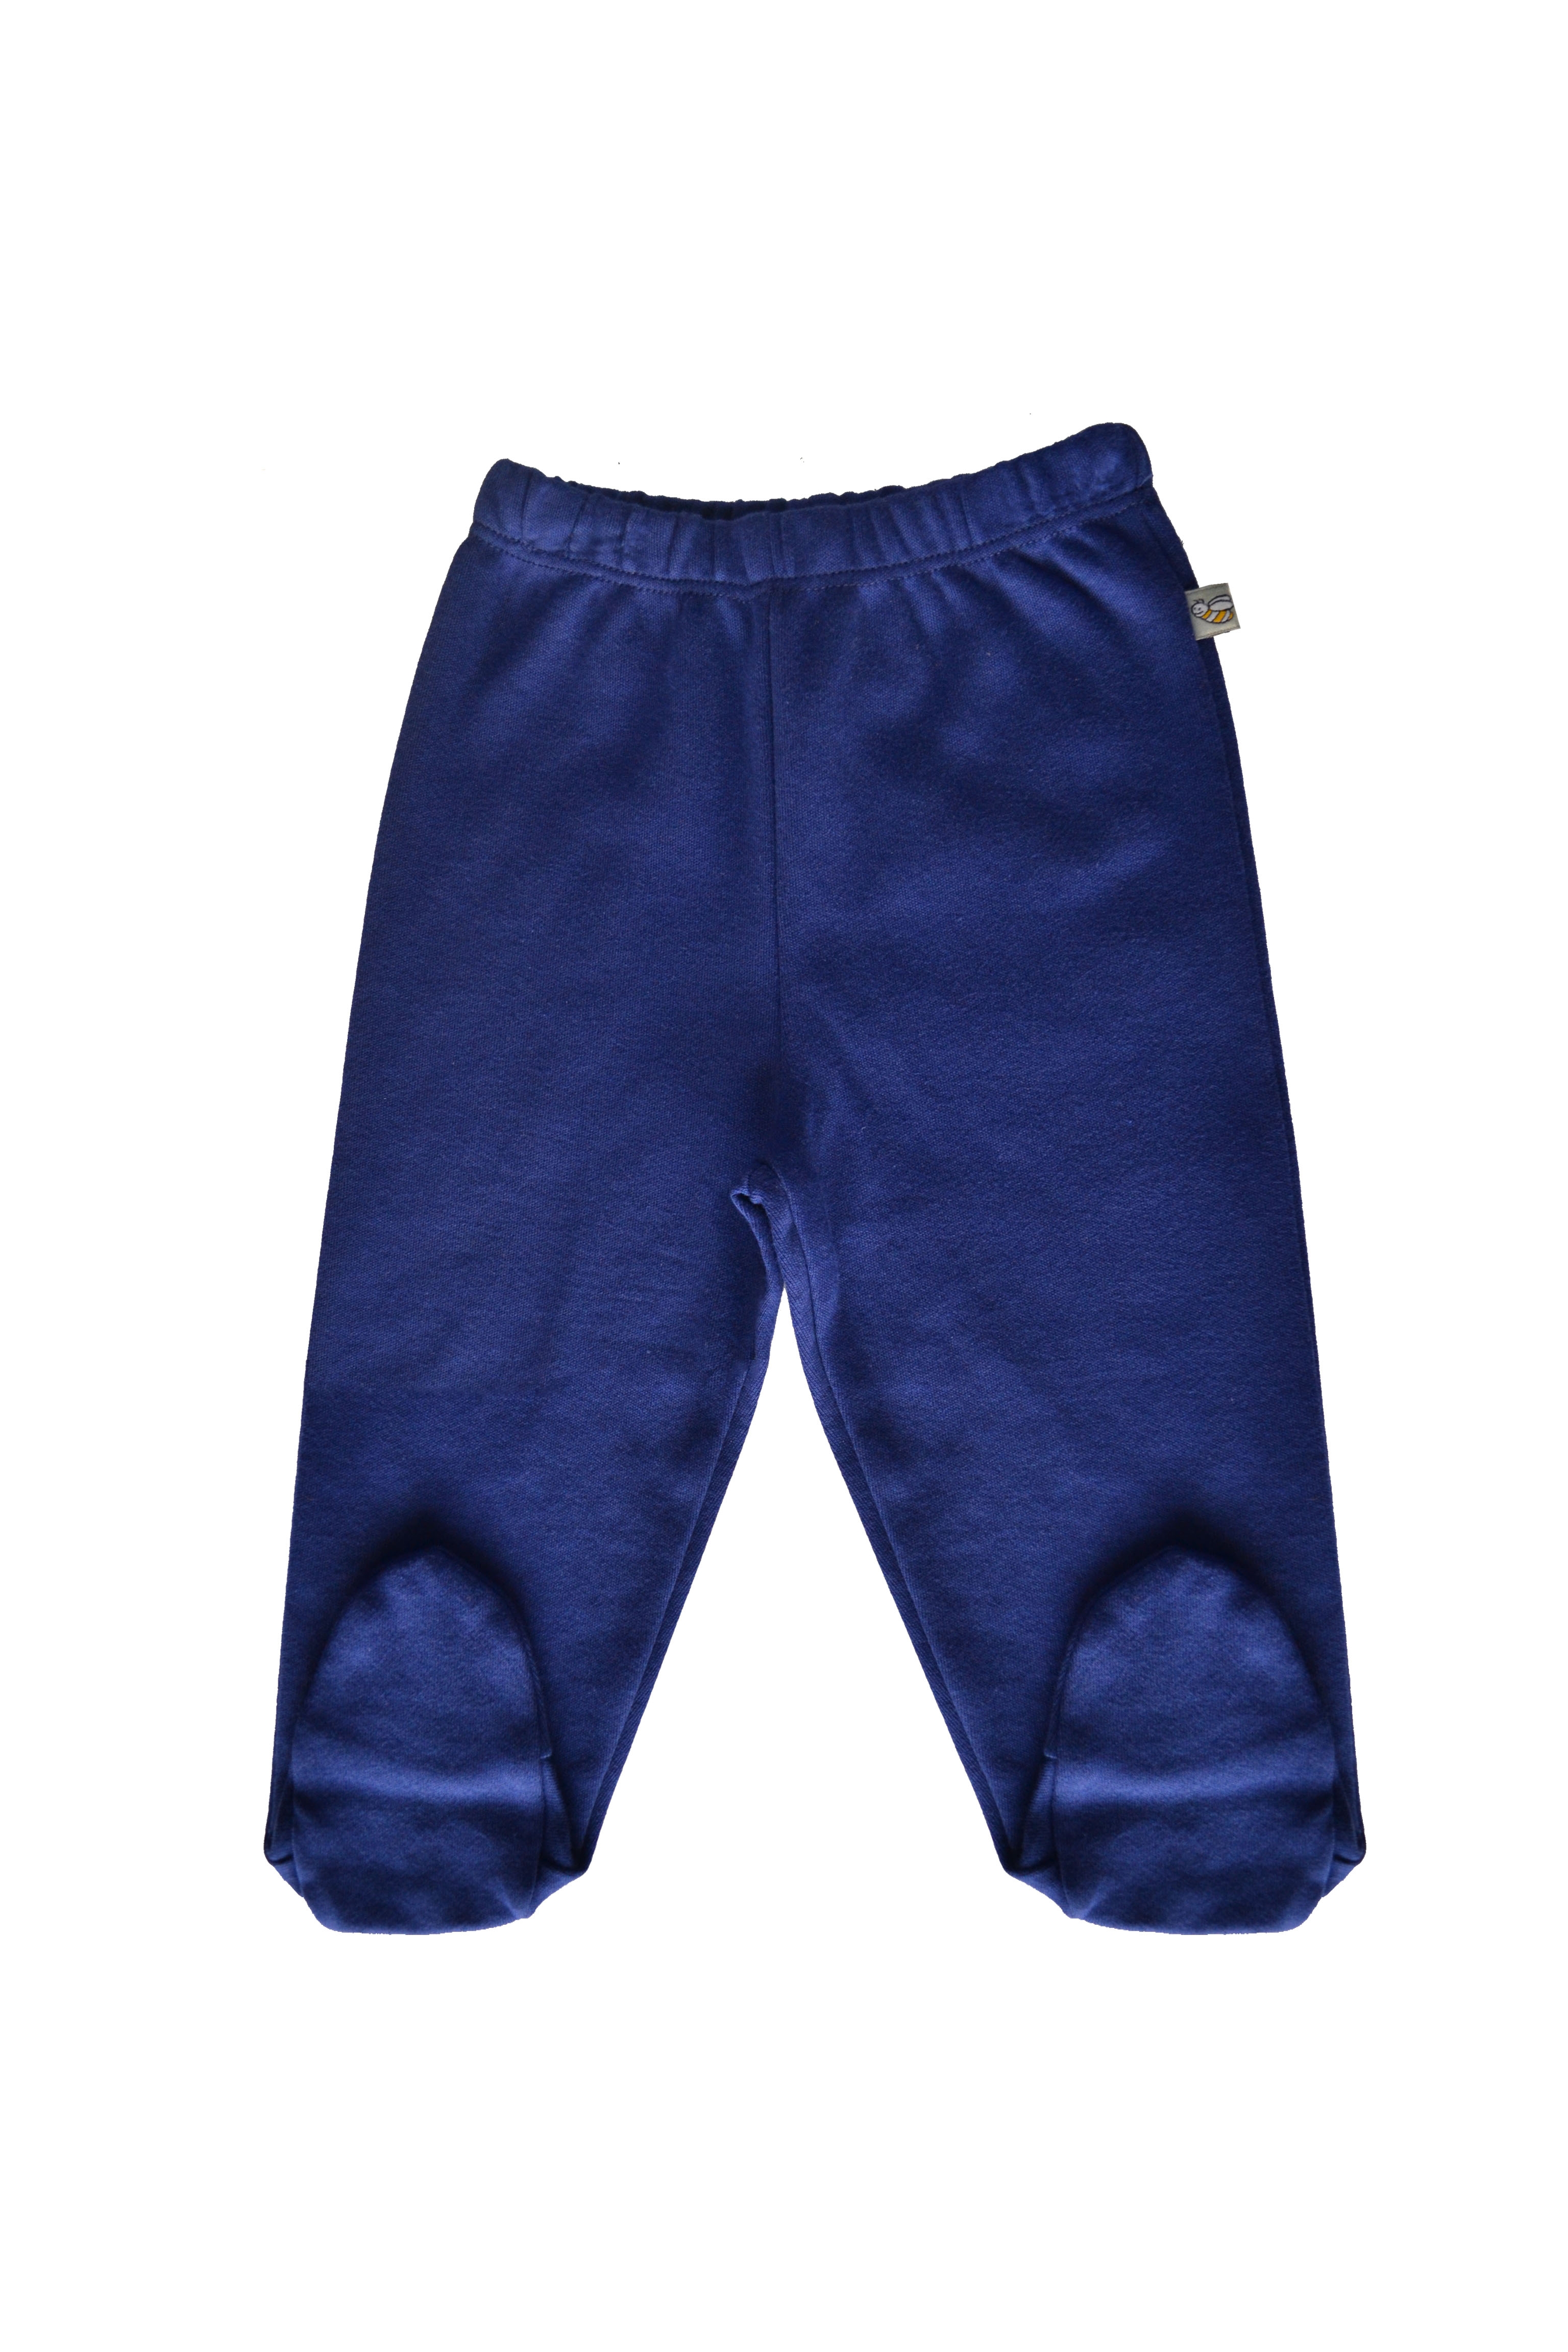 Babeez | Navy Pant with Feet (100% Cotton Interlock Biowash) undefined